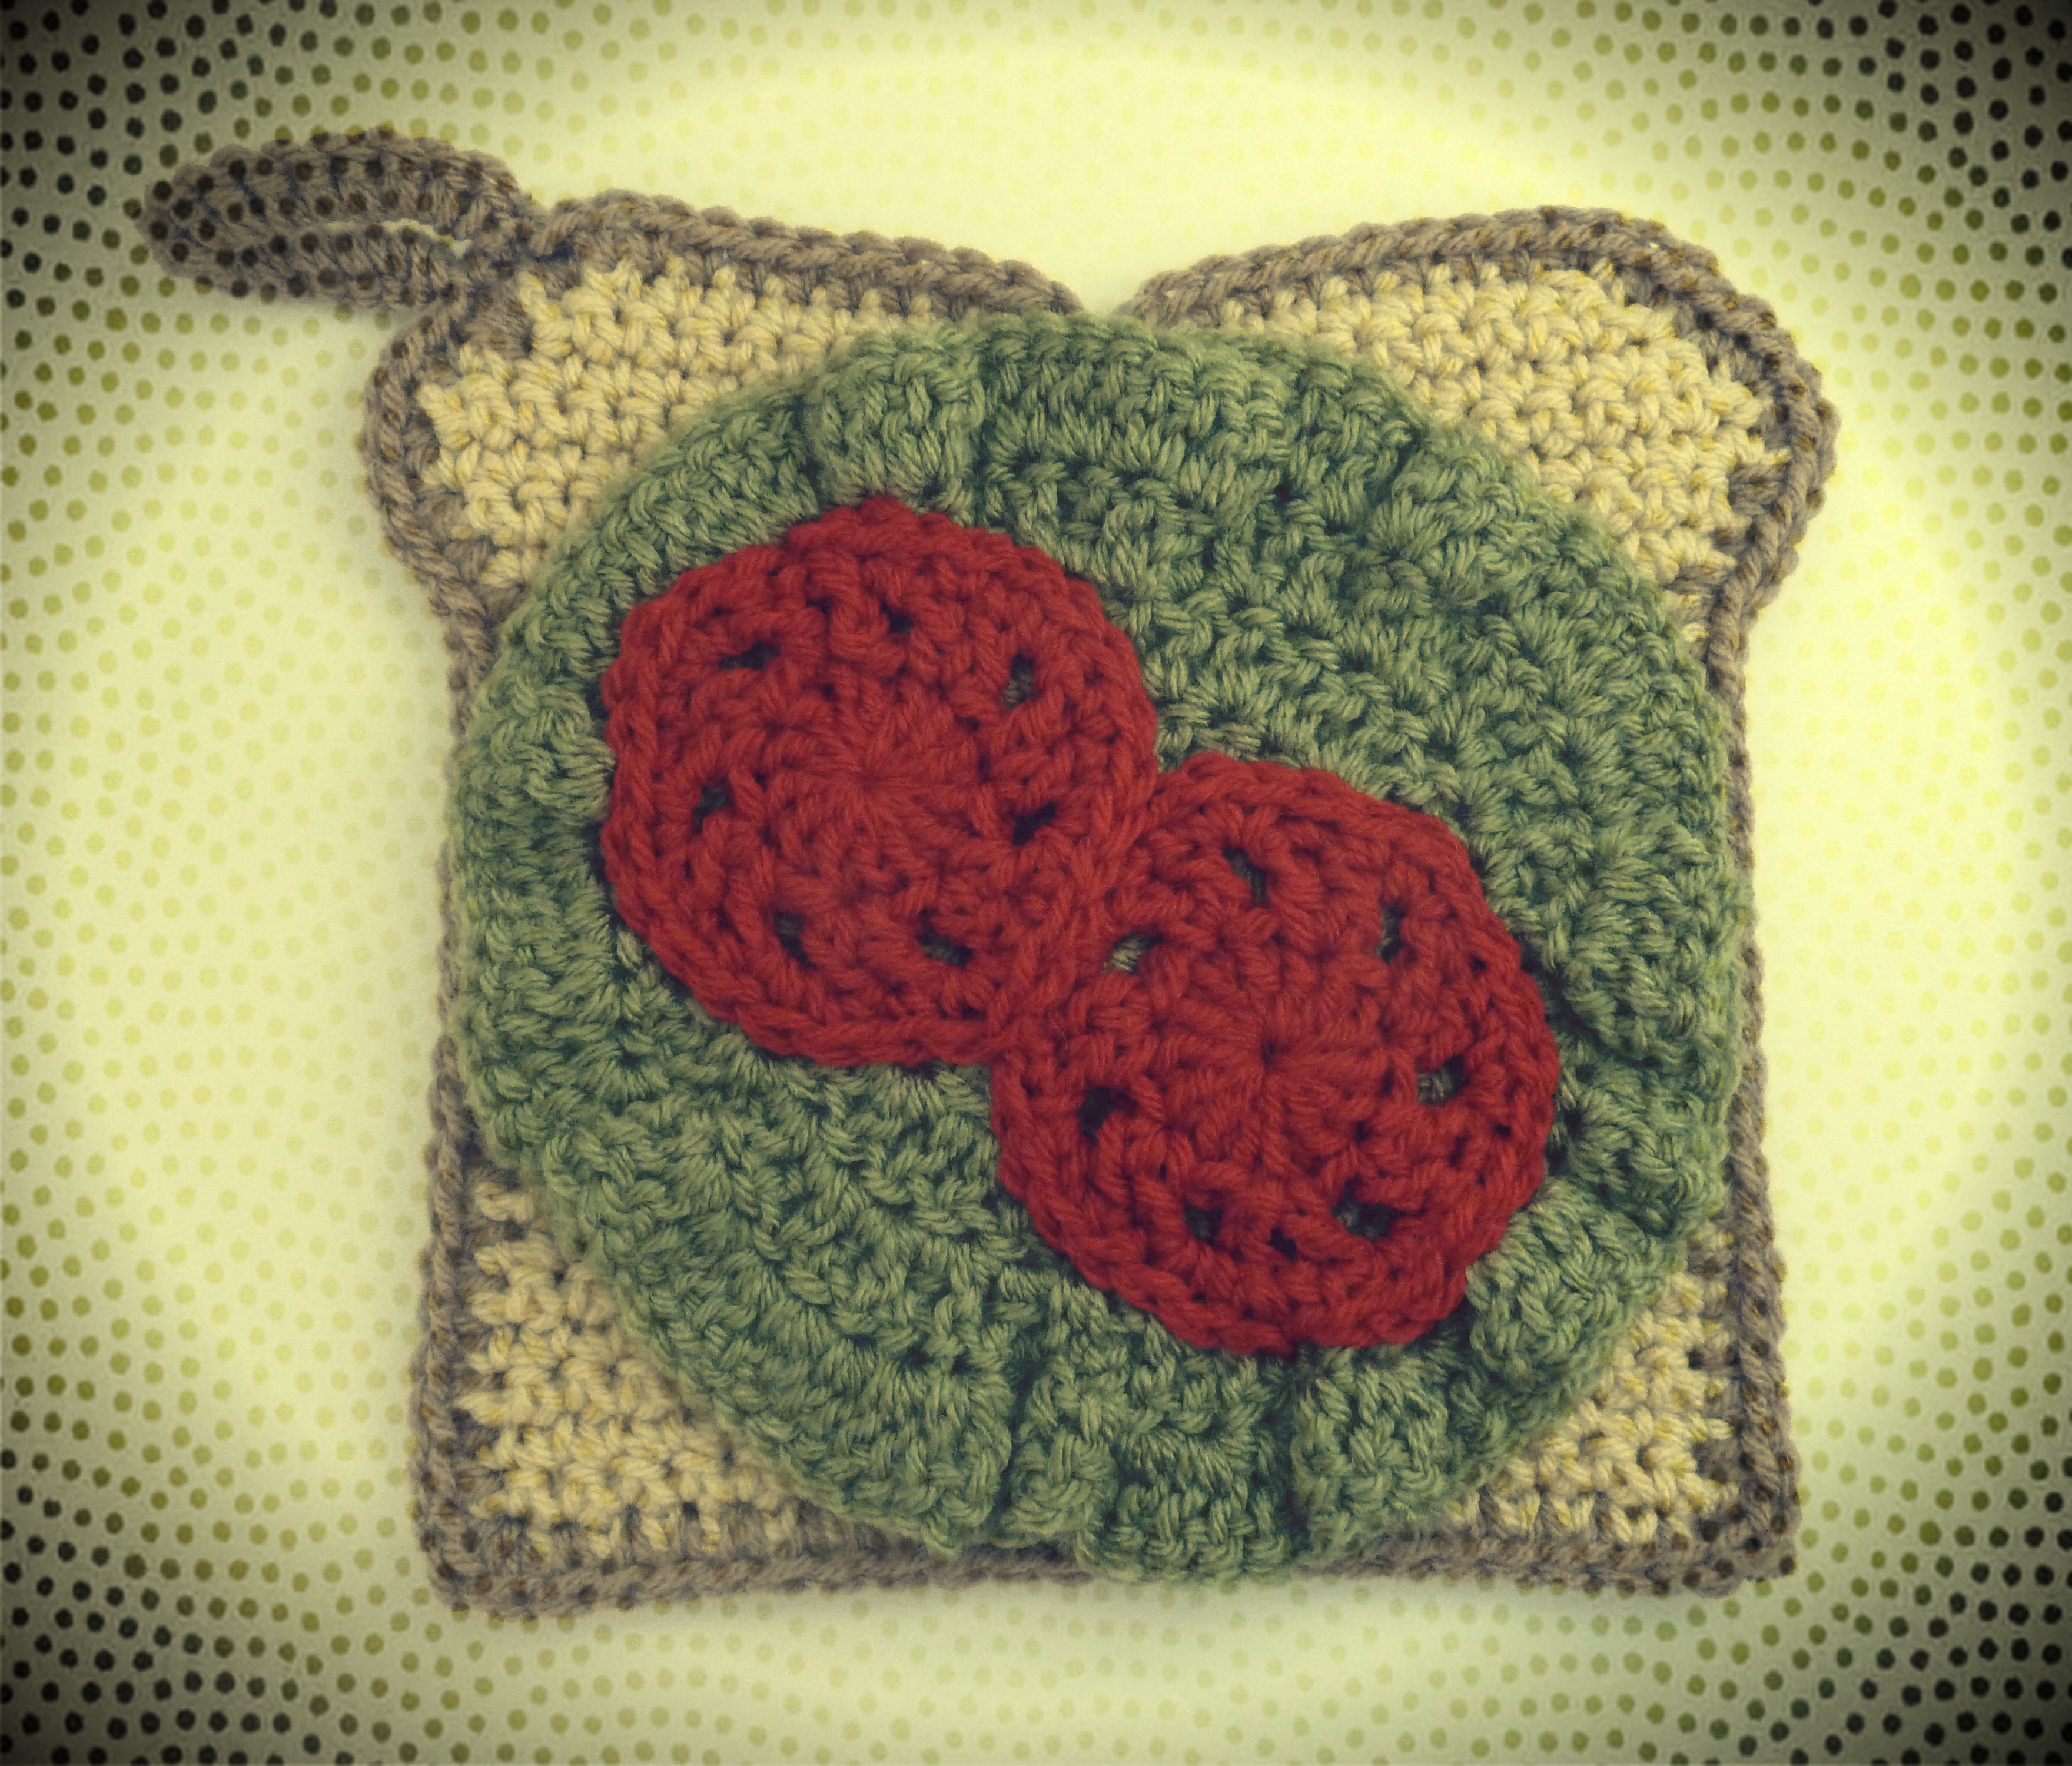 Crochet Apple Potholder Pattern Free Open Face Sandwich Potholder Crochet Pattern Book People Studio